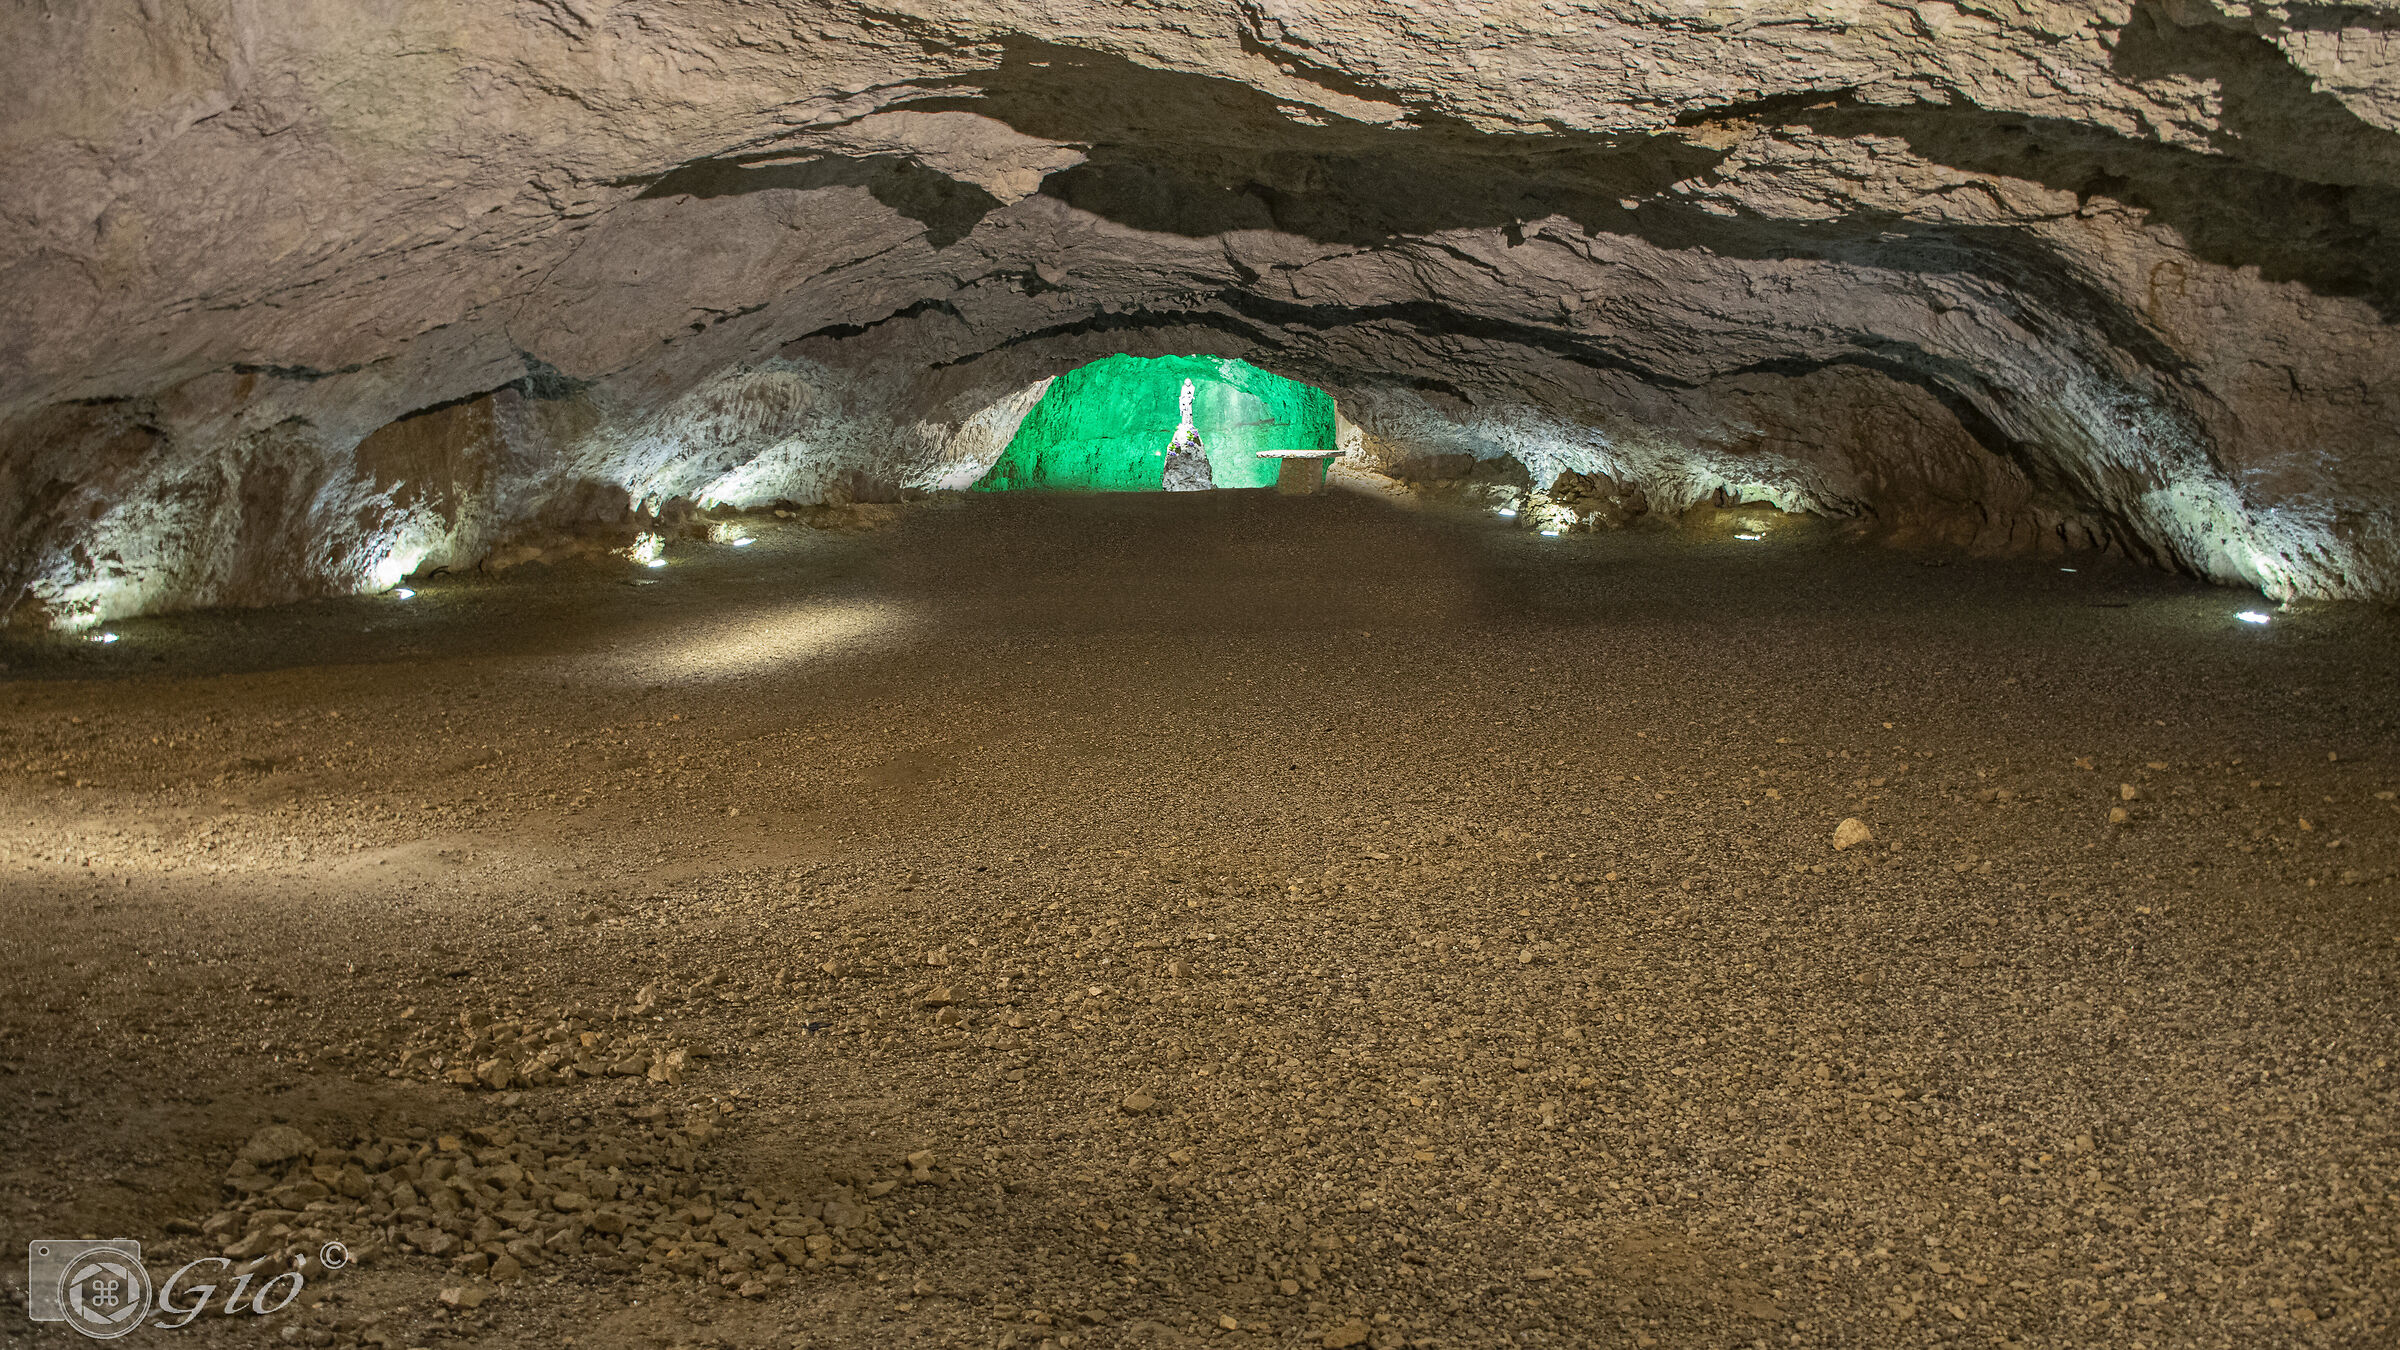 Grotta  verde  Pradis  (Pn)...